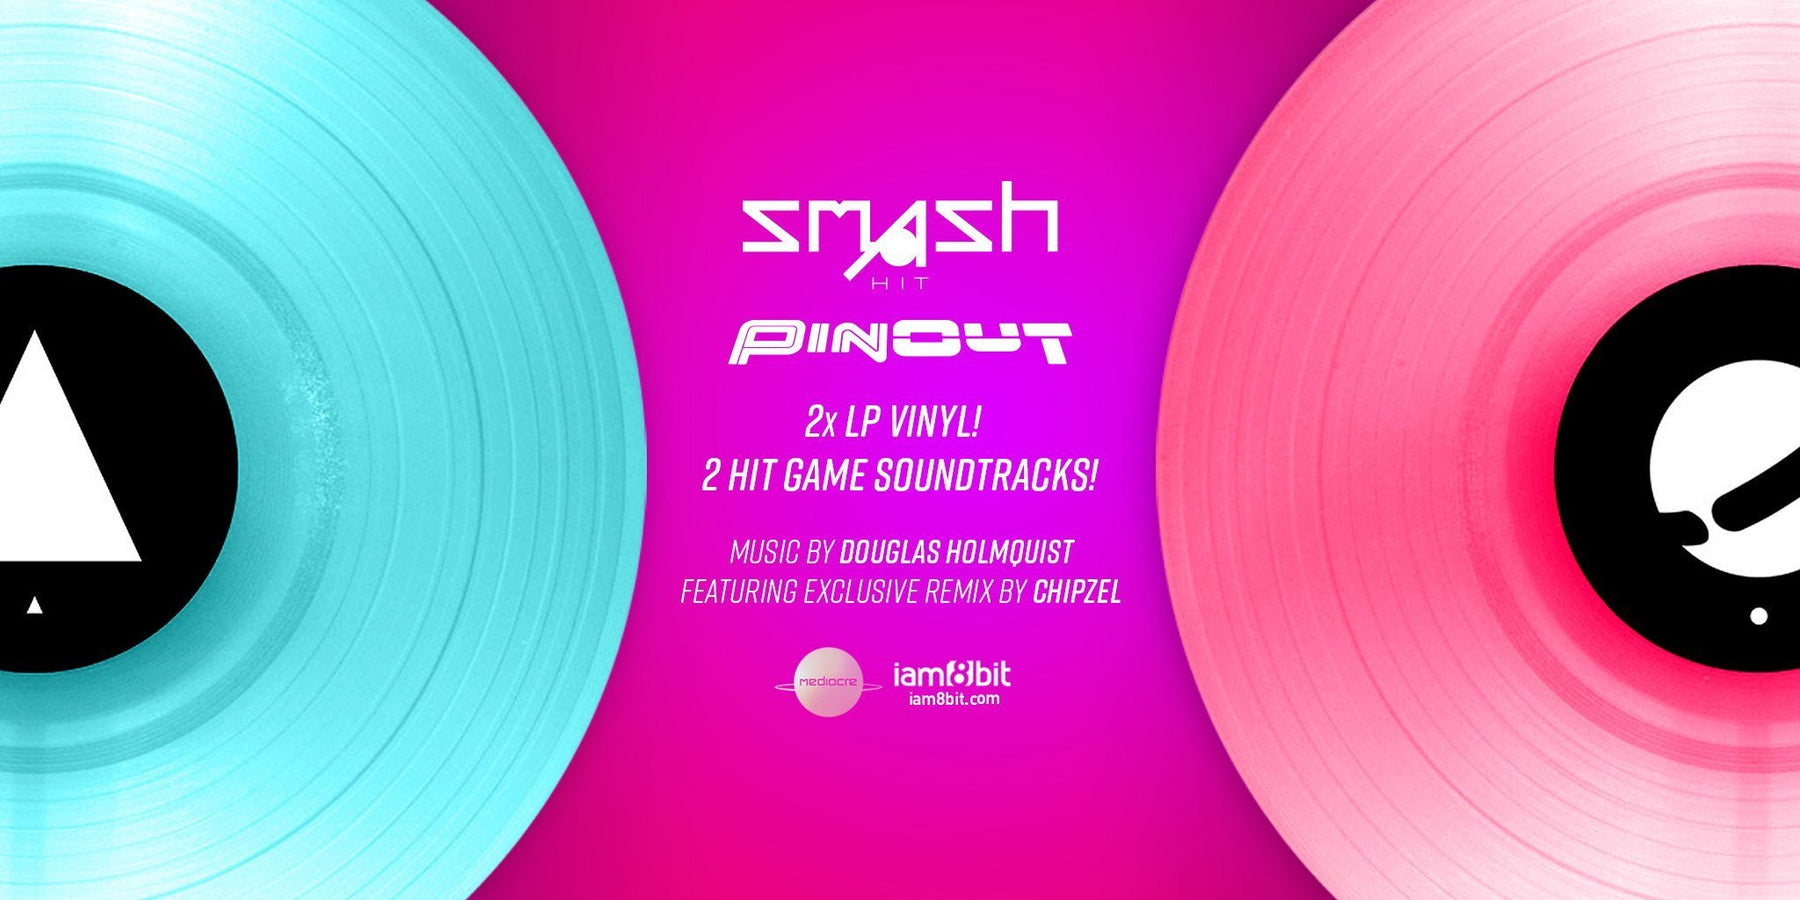 Smash Hit / PinOut 2xLP Vinyl Soundtracks – iam8bit japan & asia